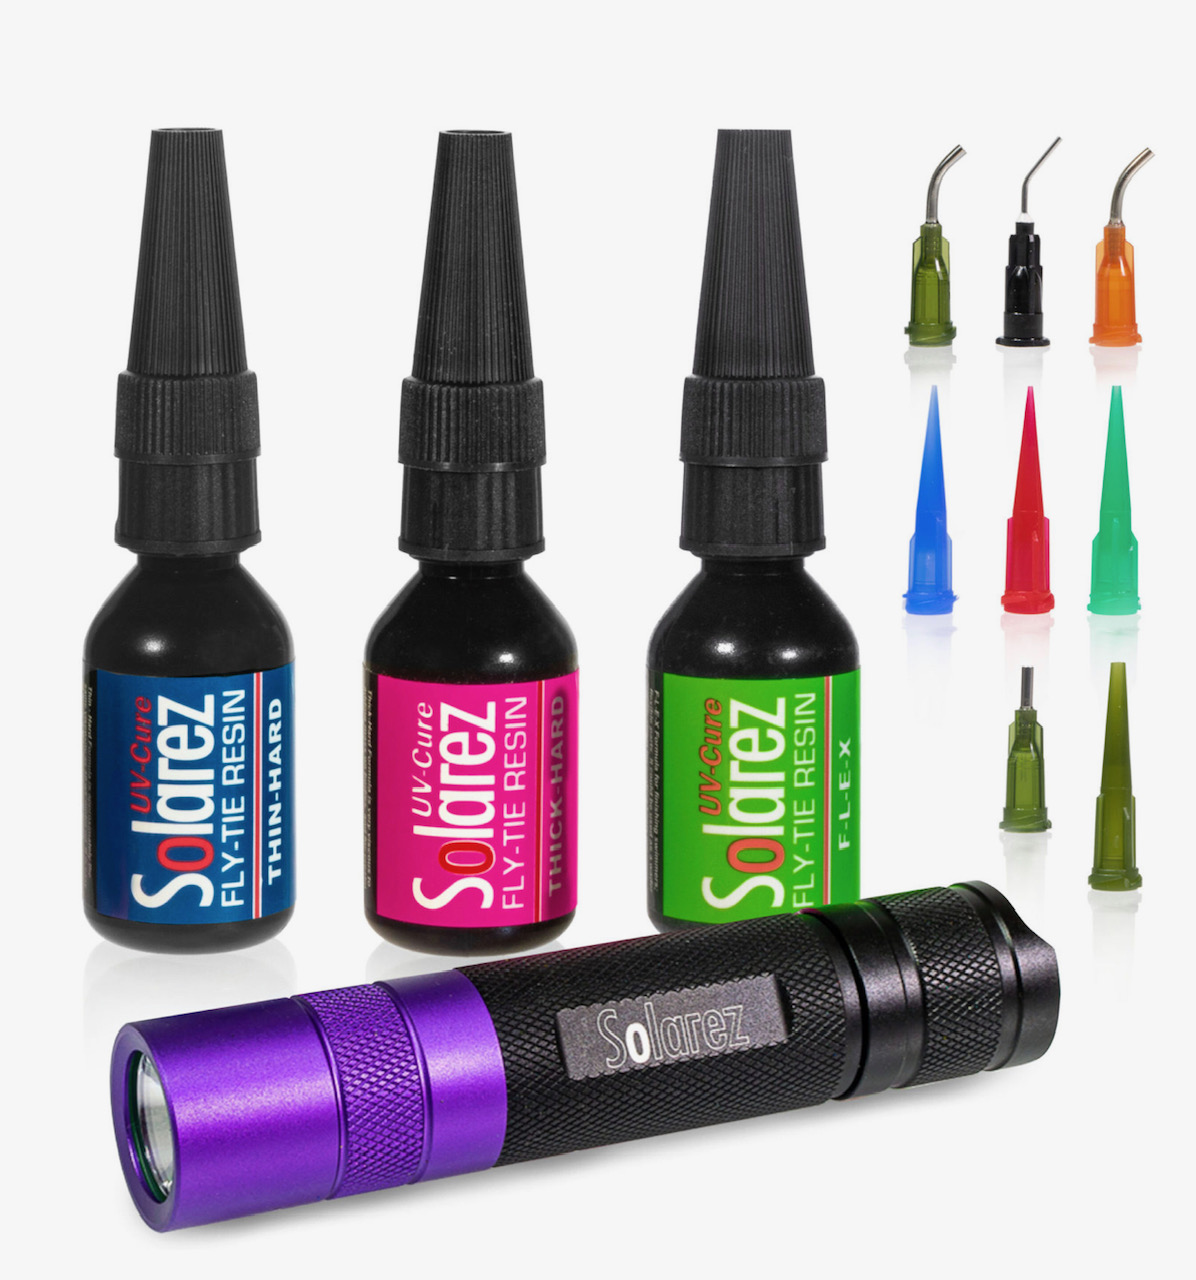 Solarez UV-Cure Fly-Tie Resin Pro Roadie Kit